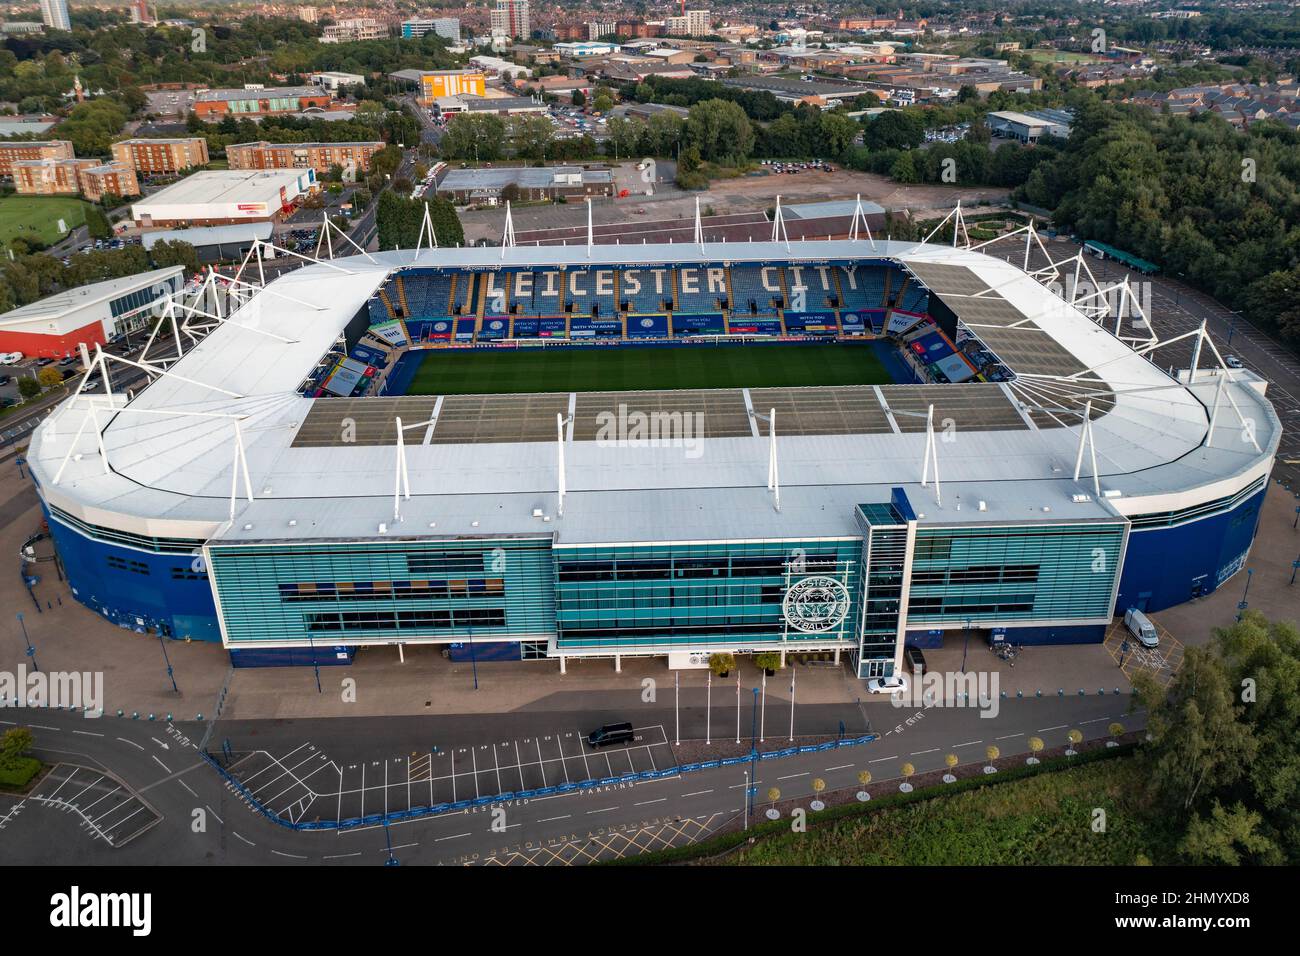 King Power Stadium, stade des anciens champions de la Premier League Leicester City football Drone site d'accident aérien de l'hélicoptère Vichai Srivaddhanaprabha Banque D'Images